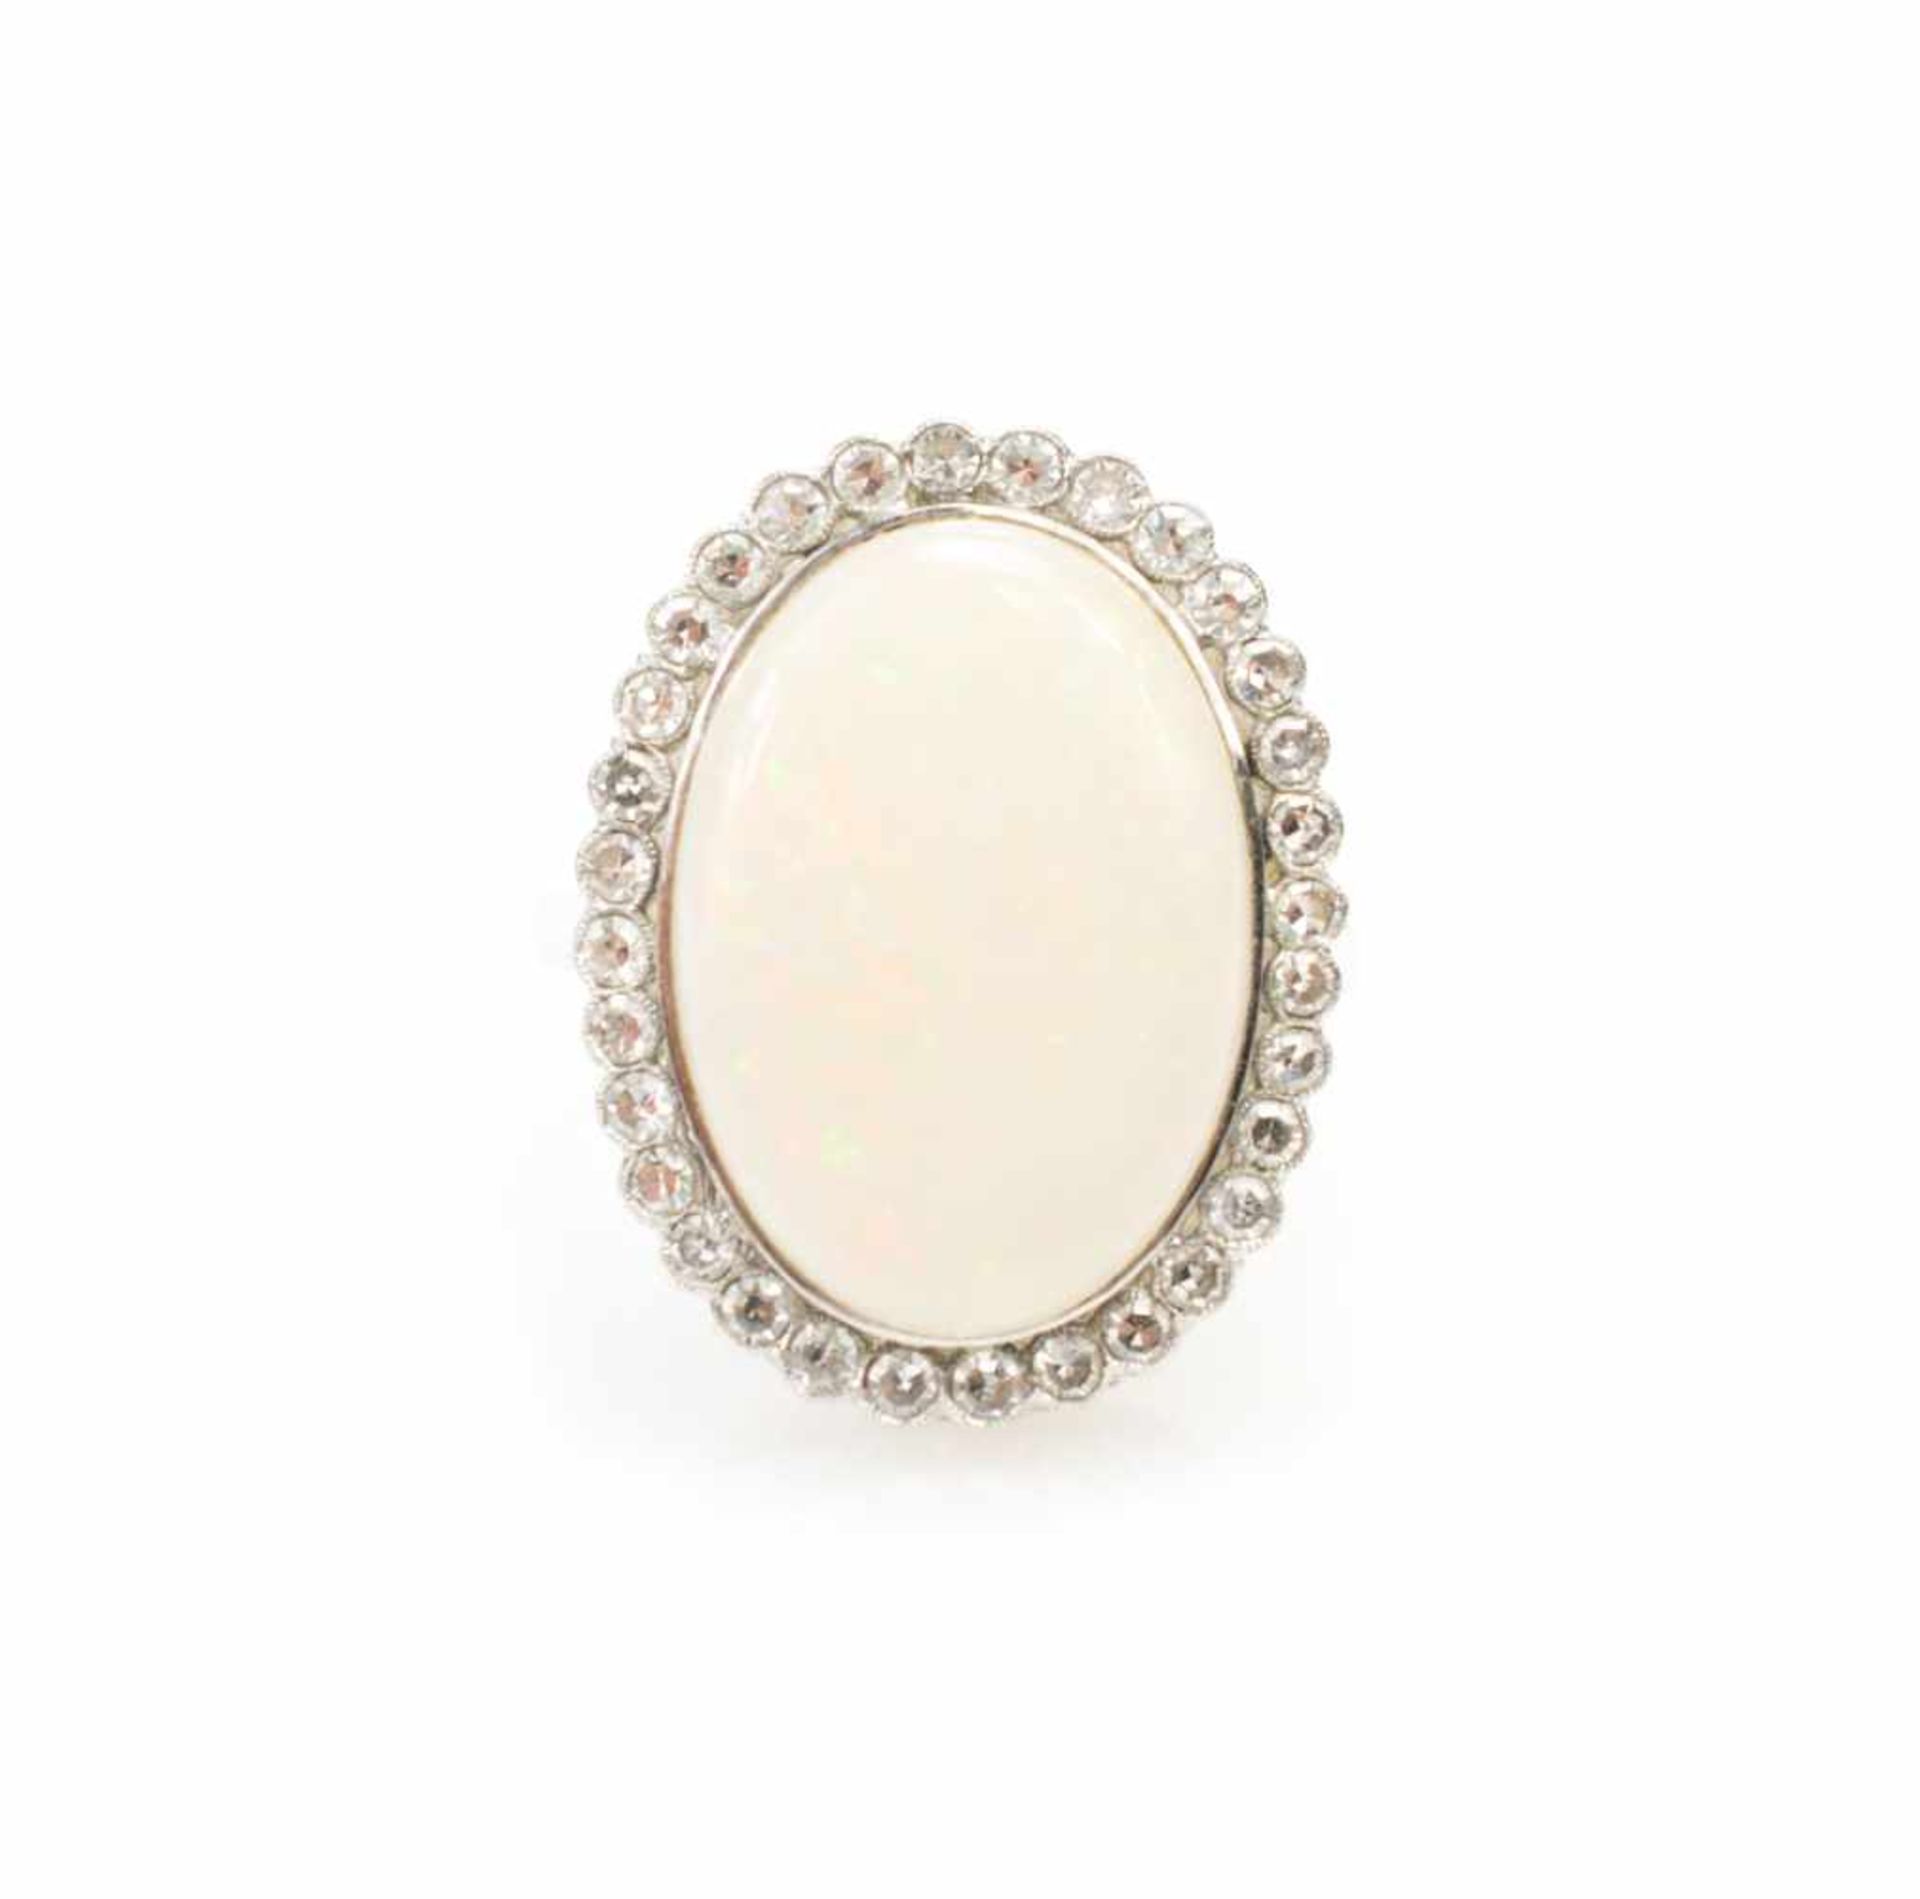 Damenring750 Weißgold, 32 Brillanten, gesamt ca. 0,9 ct, ein weißer Opal, Ringdurchmesser 18,5 mm,